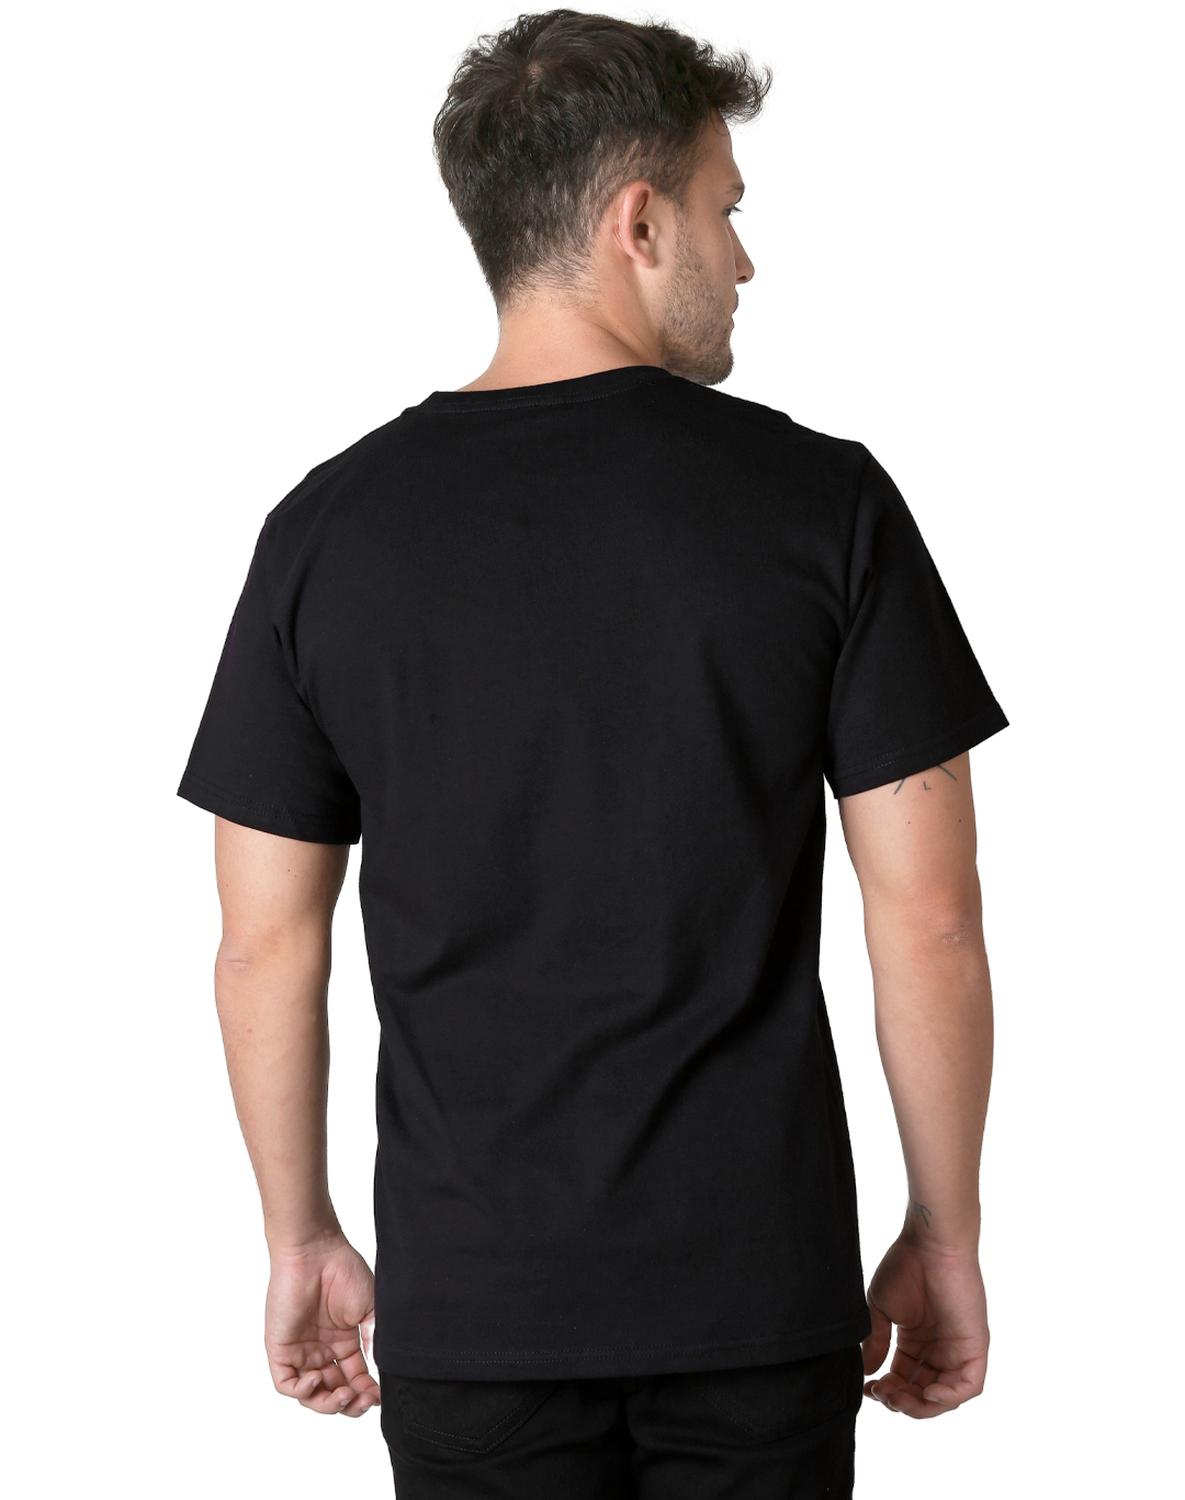 Playera Moda Camiseta Hombre Negro Toxic 51604623